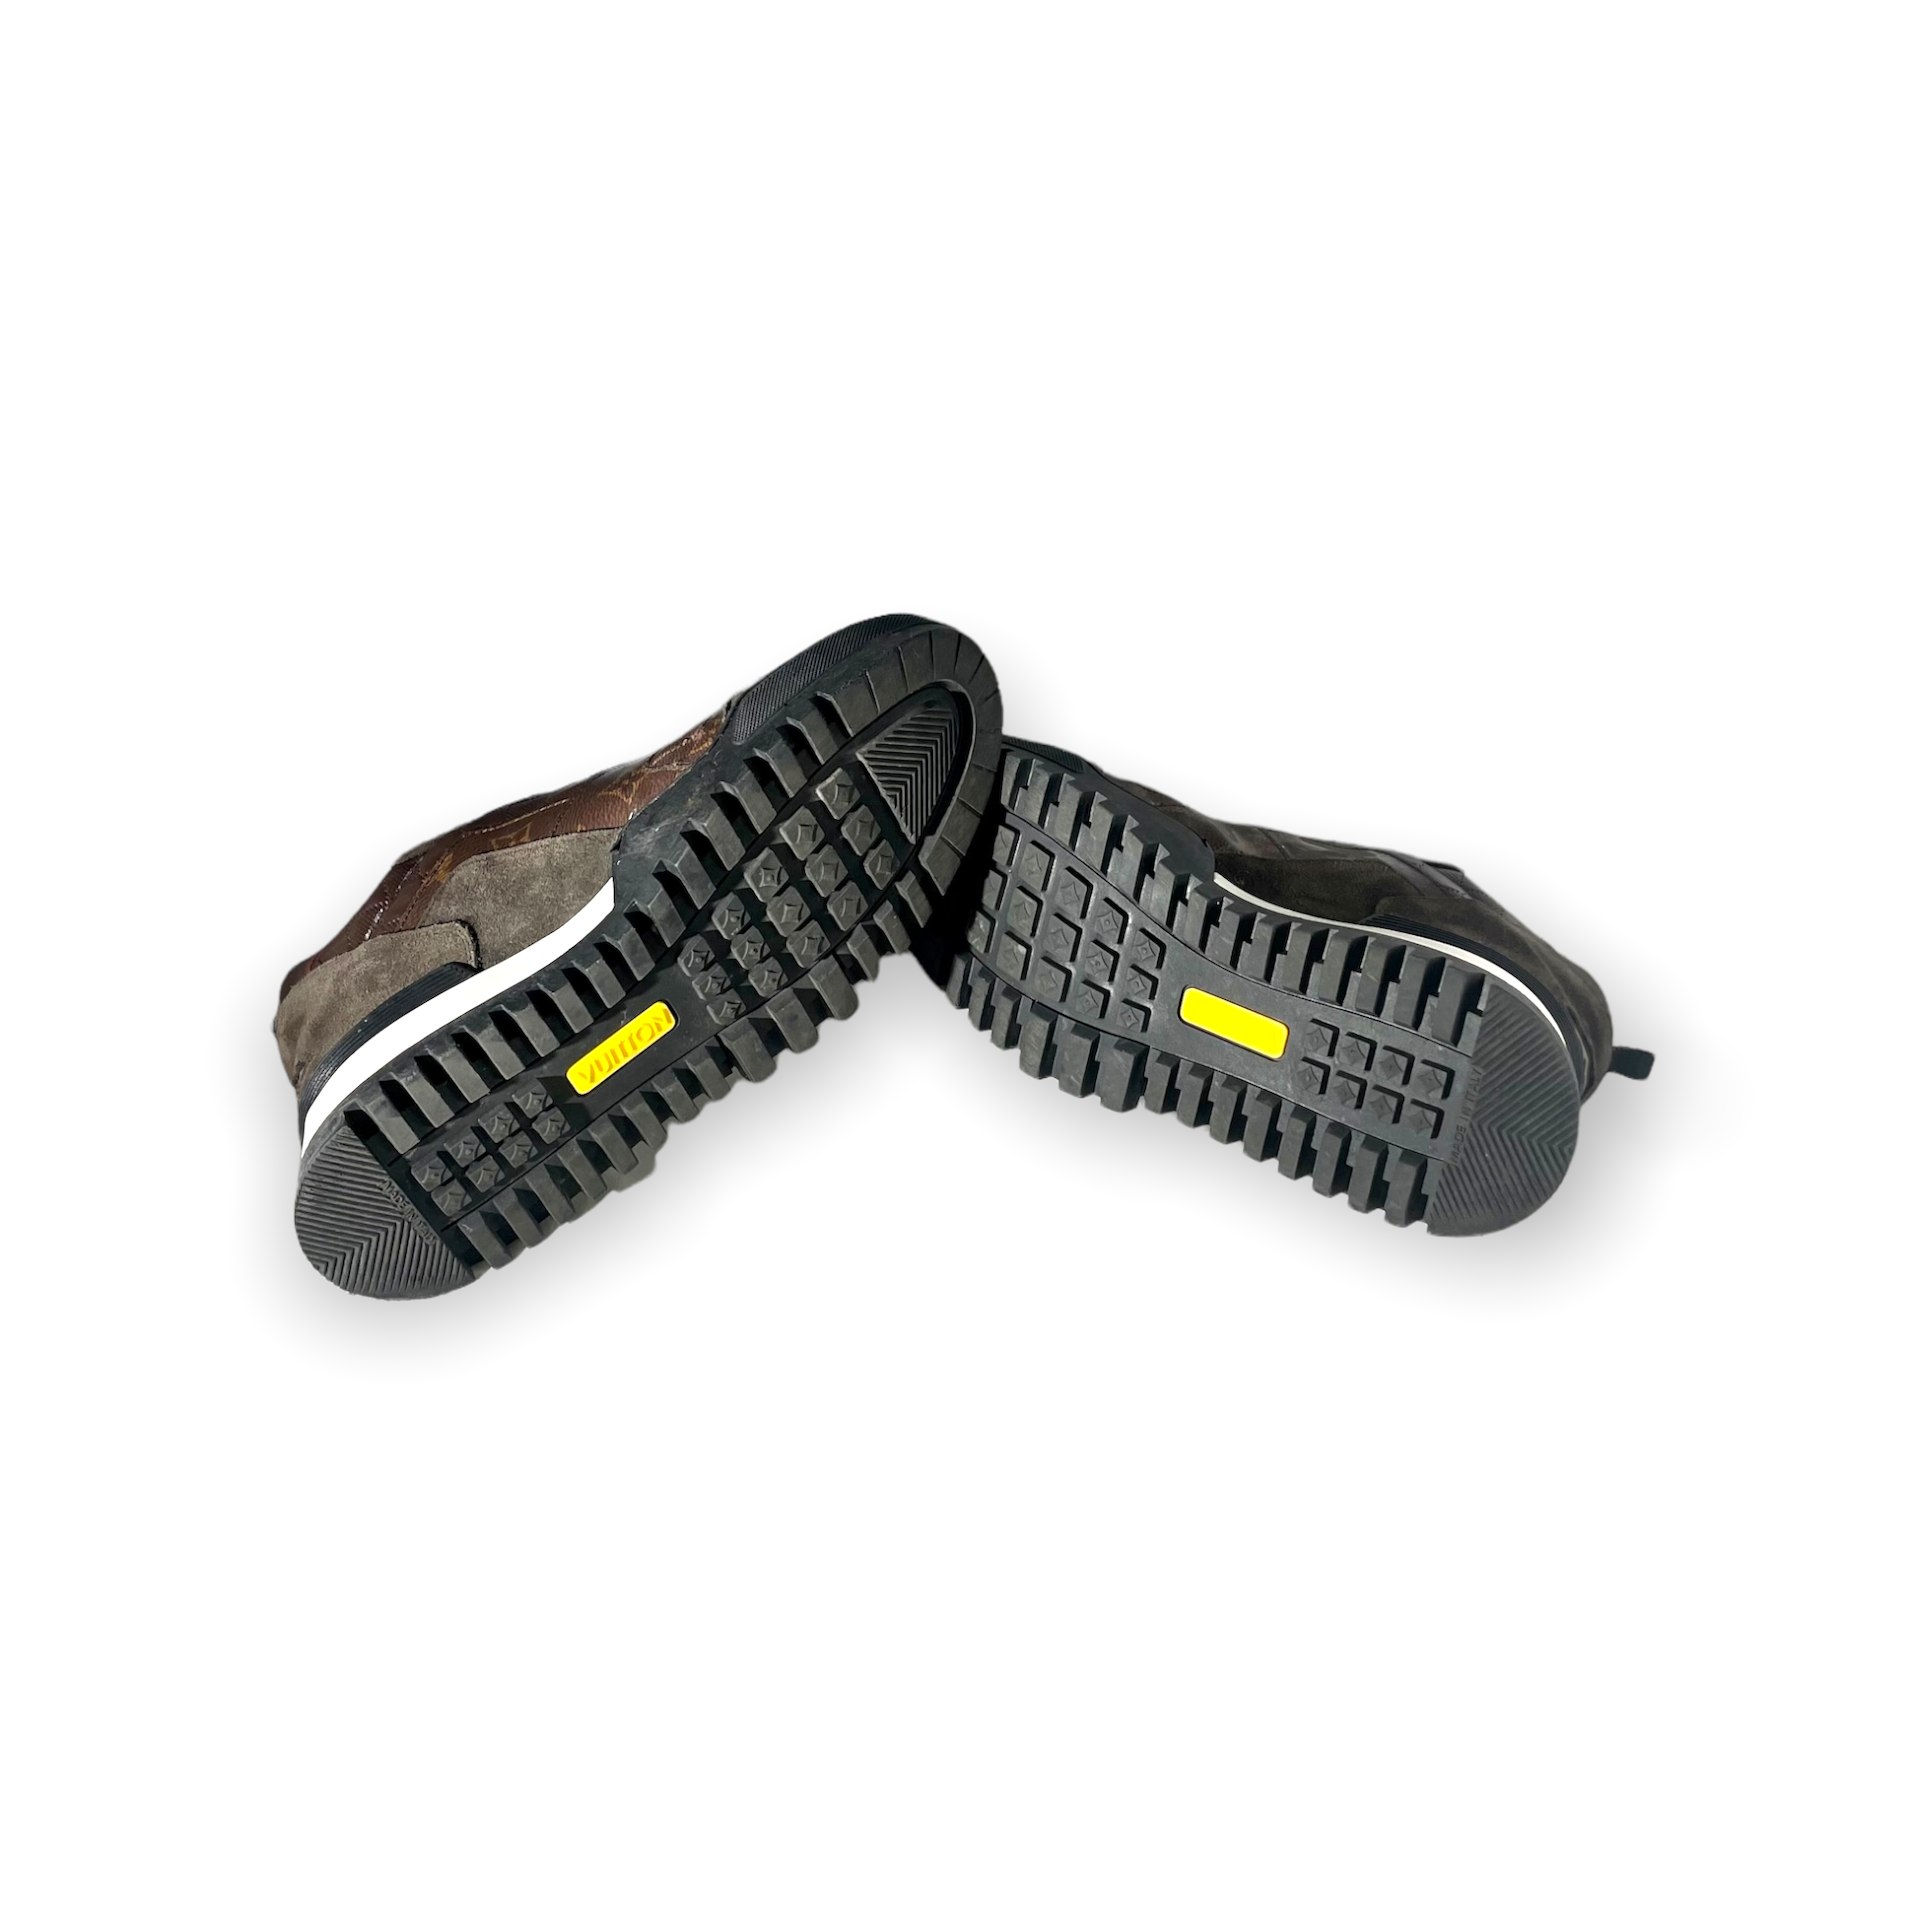 Louis Vuitton Lv Hiking Line Low Cut Sneakers Shoes Bm01 Suede